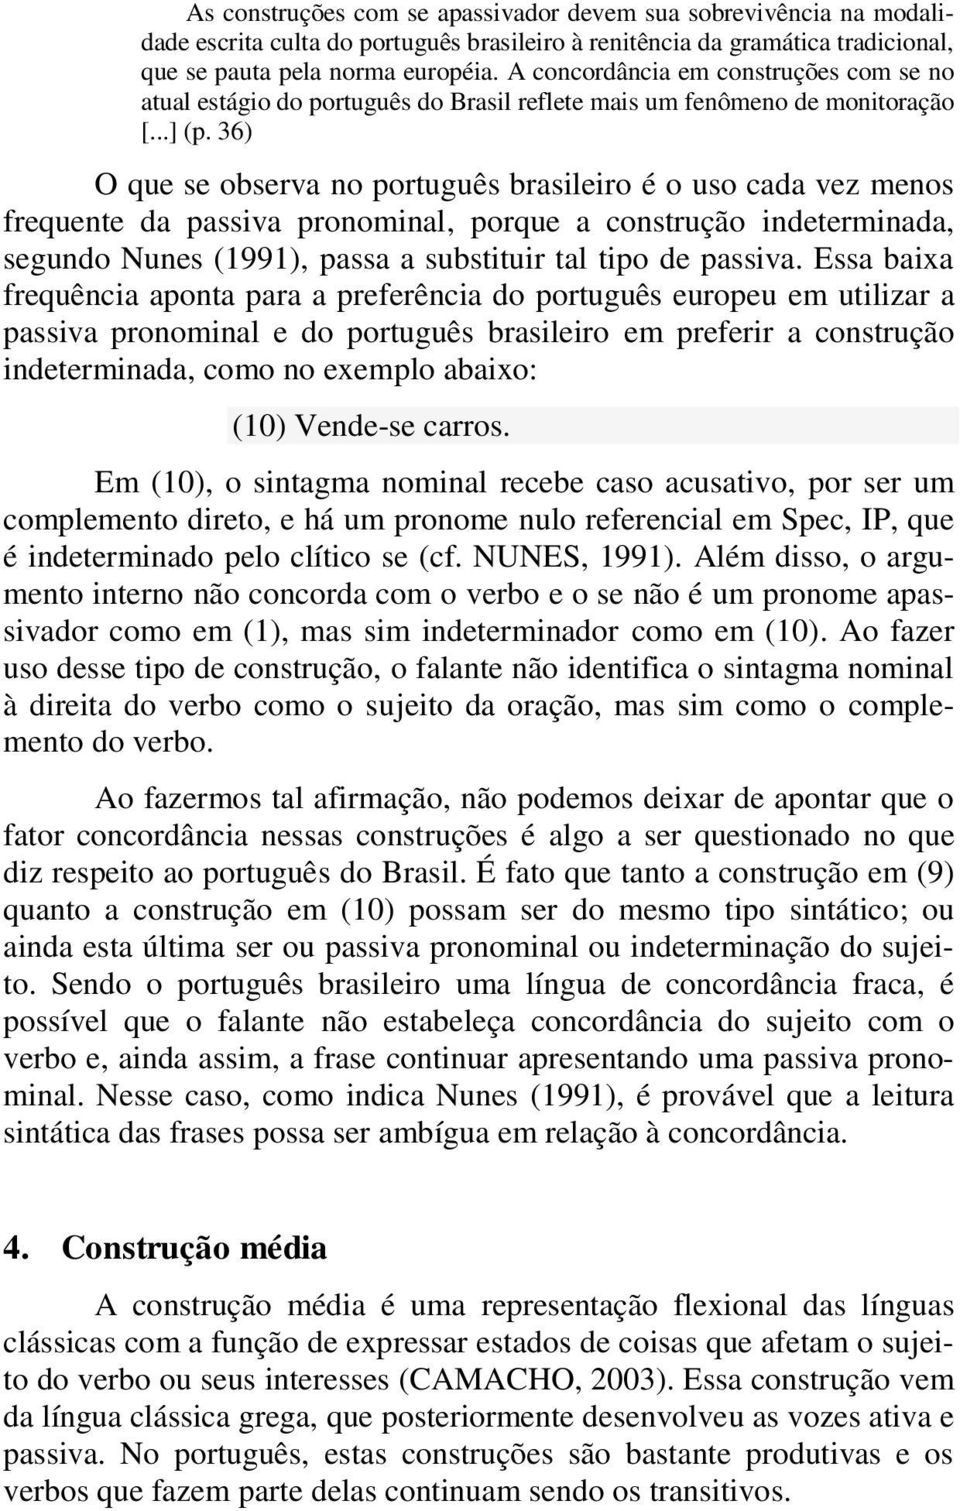 36) O que se observa no português brasileiro é o uso cada vez menos frequente da passiva pronominal, porque a construção indeterminada, segundo Nunes (1991), passa a substituir tal tipo de passiva.